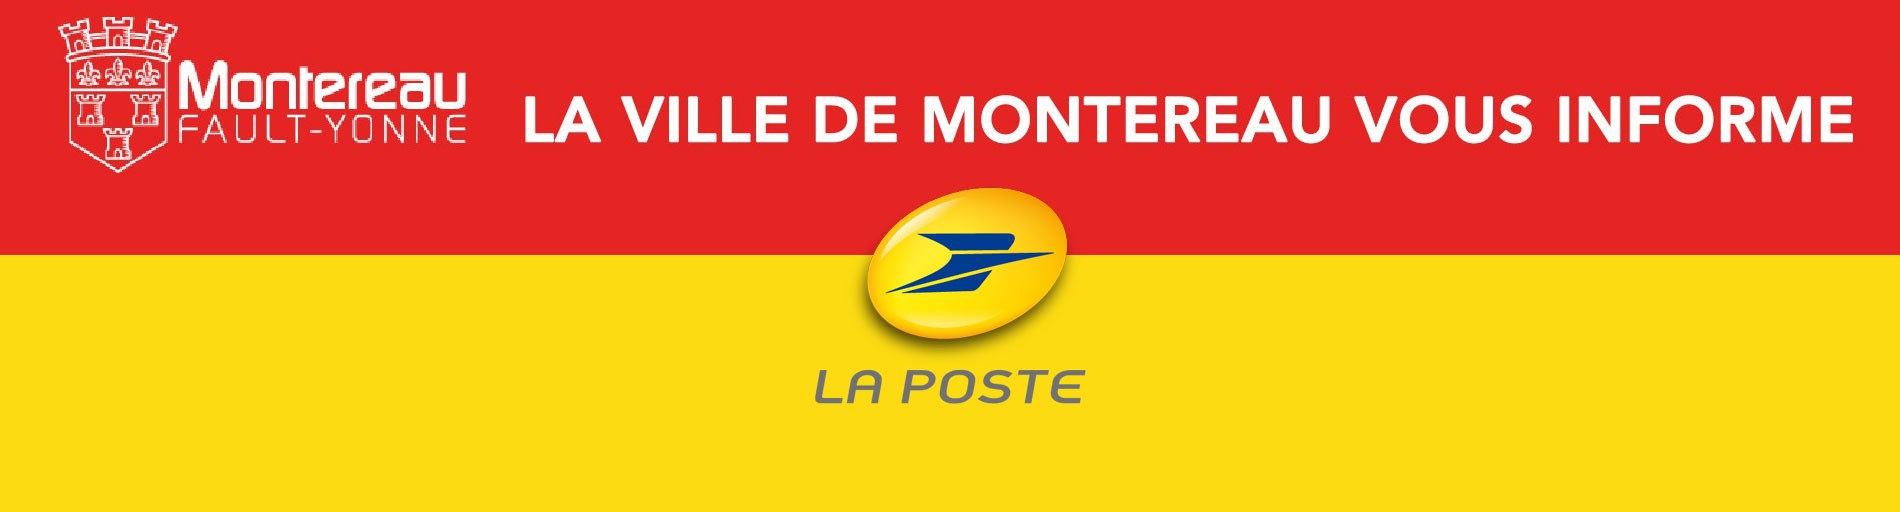 La Poste Se Mobilise Montereau Fault Yonne